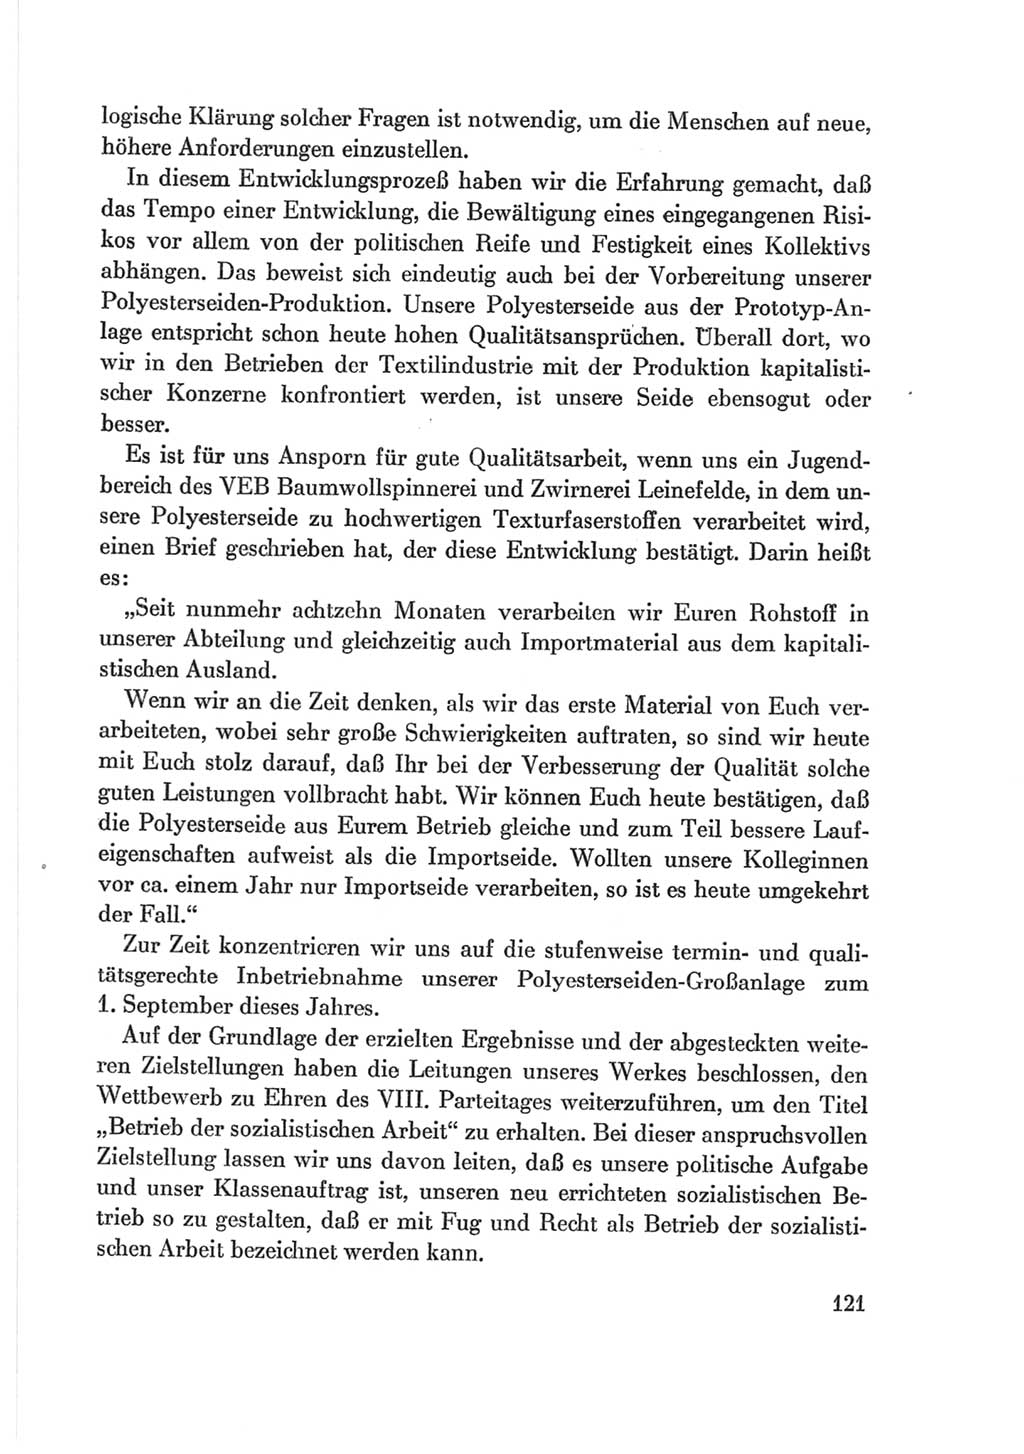 Protokoll der Verhandlungen des Ⅷ. Parteitages der Sozialistischen Einheitspartei Deutschlands (SED) [Deutsche Demokratische Republik (DDR)] 1971, Band 2, Seite 121 (Prot. Verh. Ⅷ. PT SED DDR 1971, Bd. 2, S. 121)